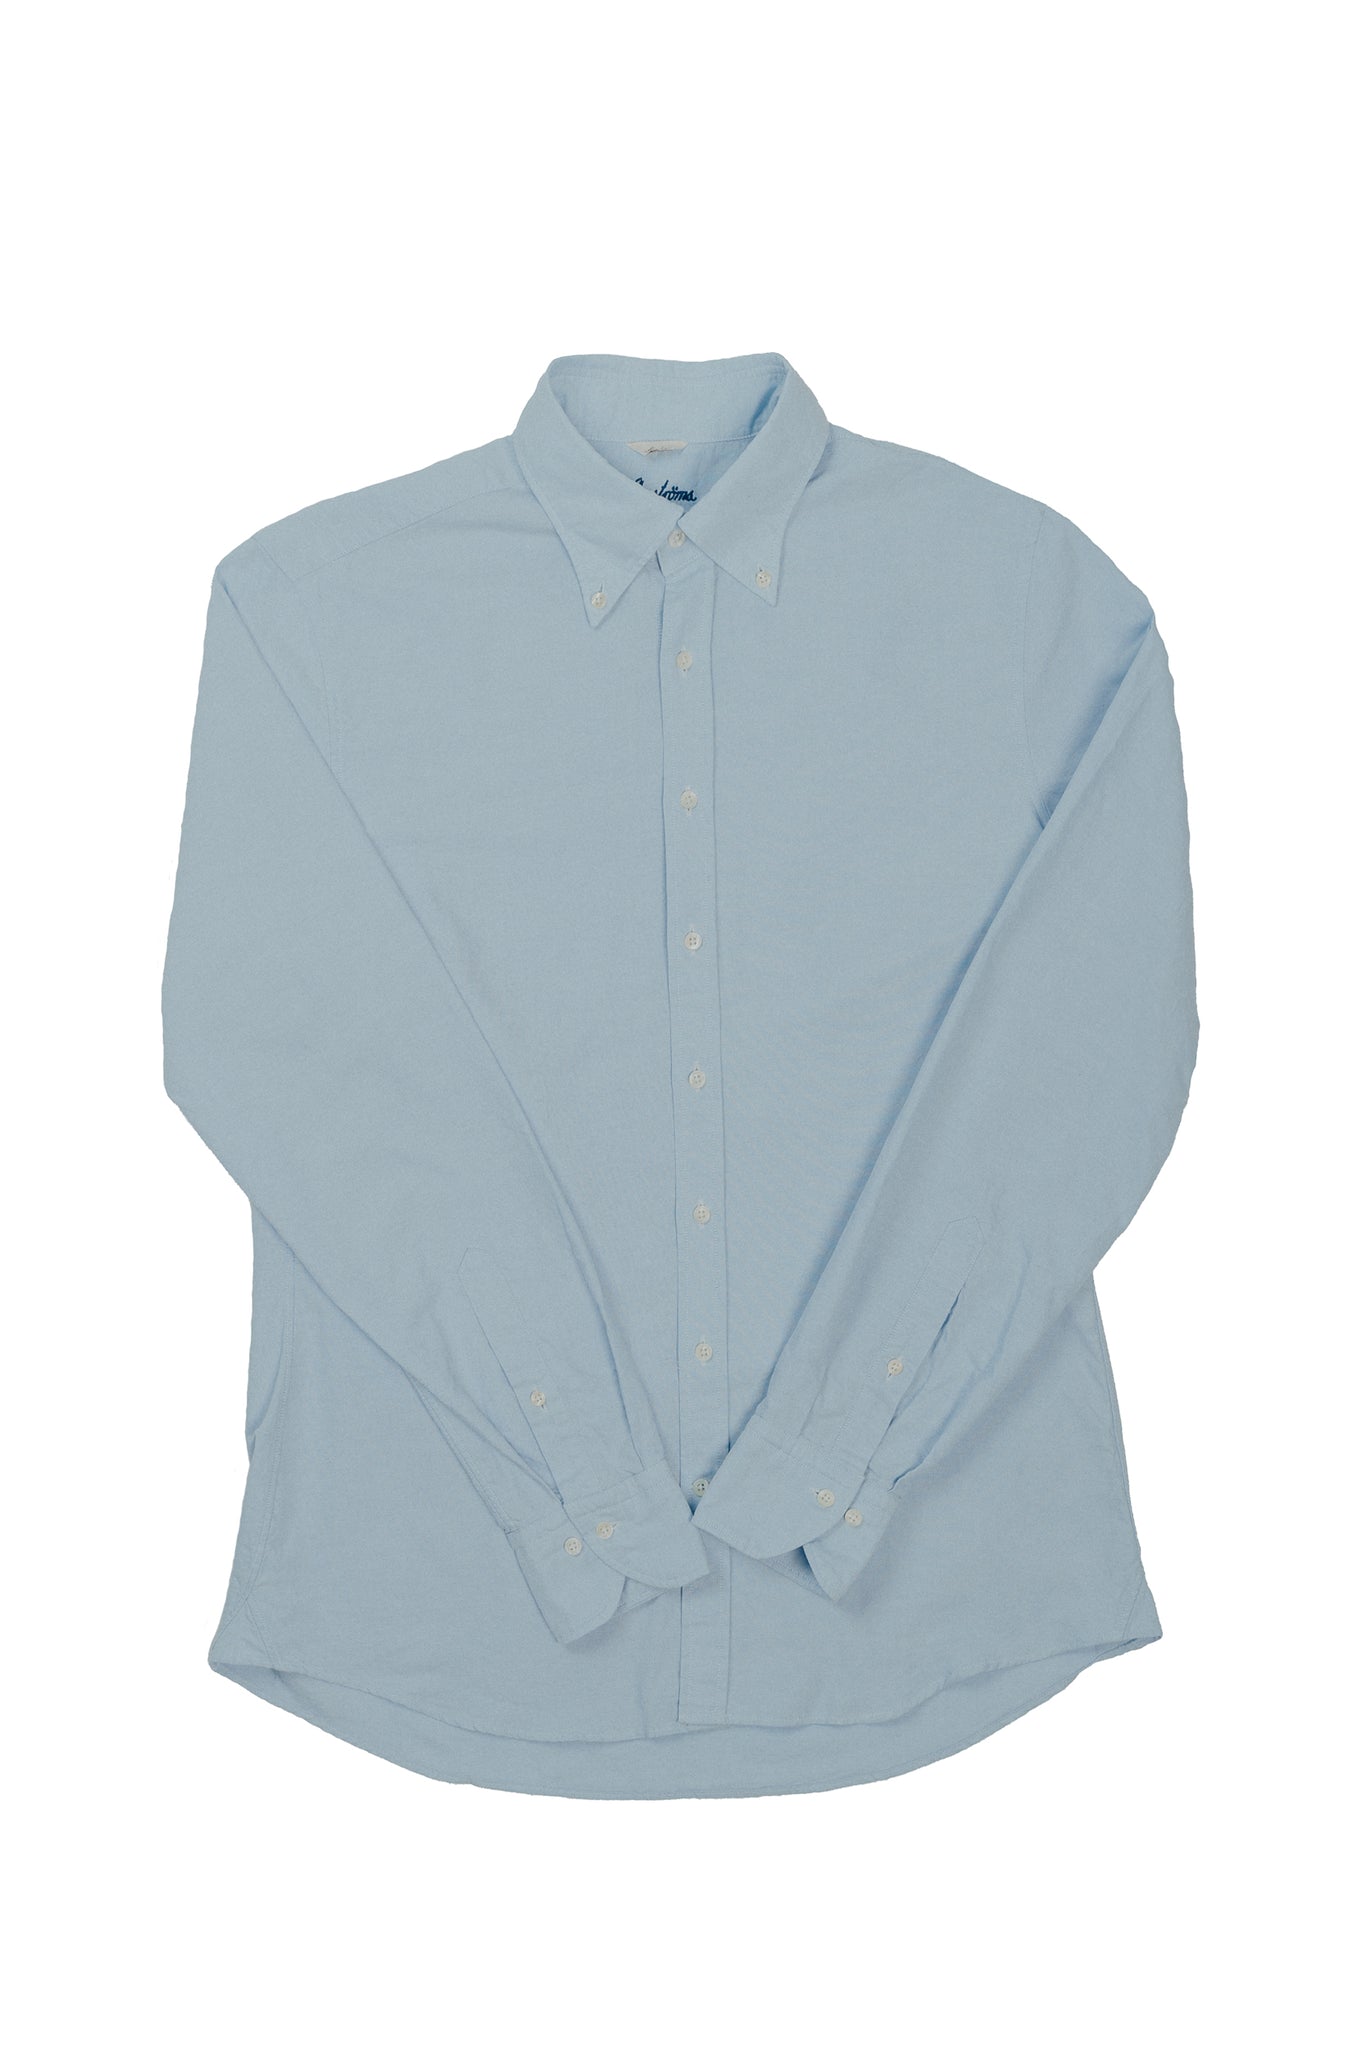 Stenströms Light Blue Casual Oxford Shirt